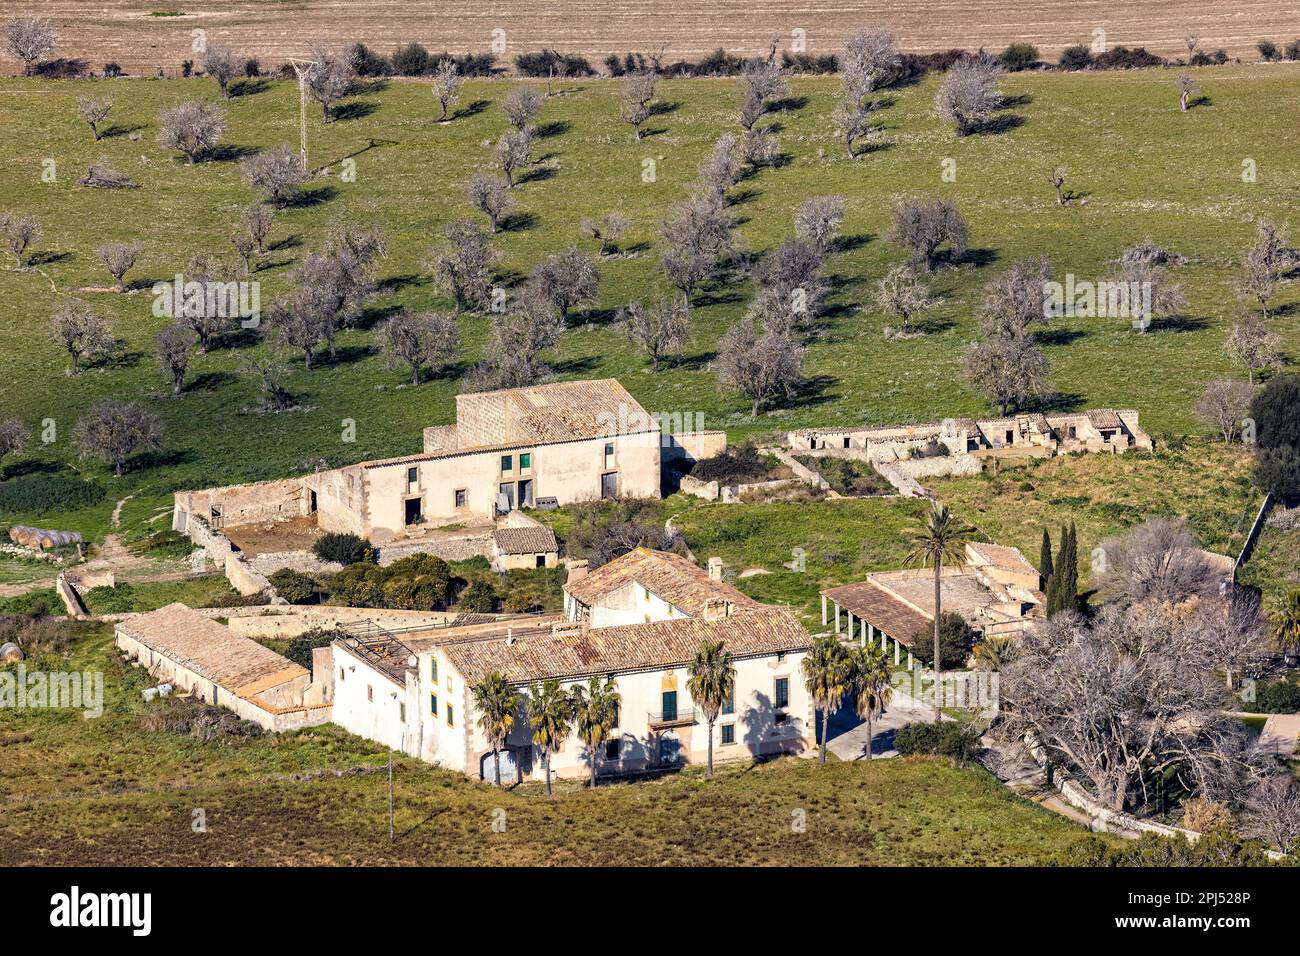 finca, rural estate near village Algaida in Majorca, Mallorca, Balearic Islands, Spain, Europe Stock Photo